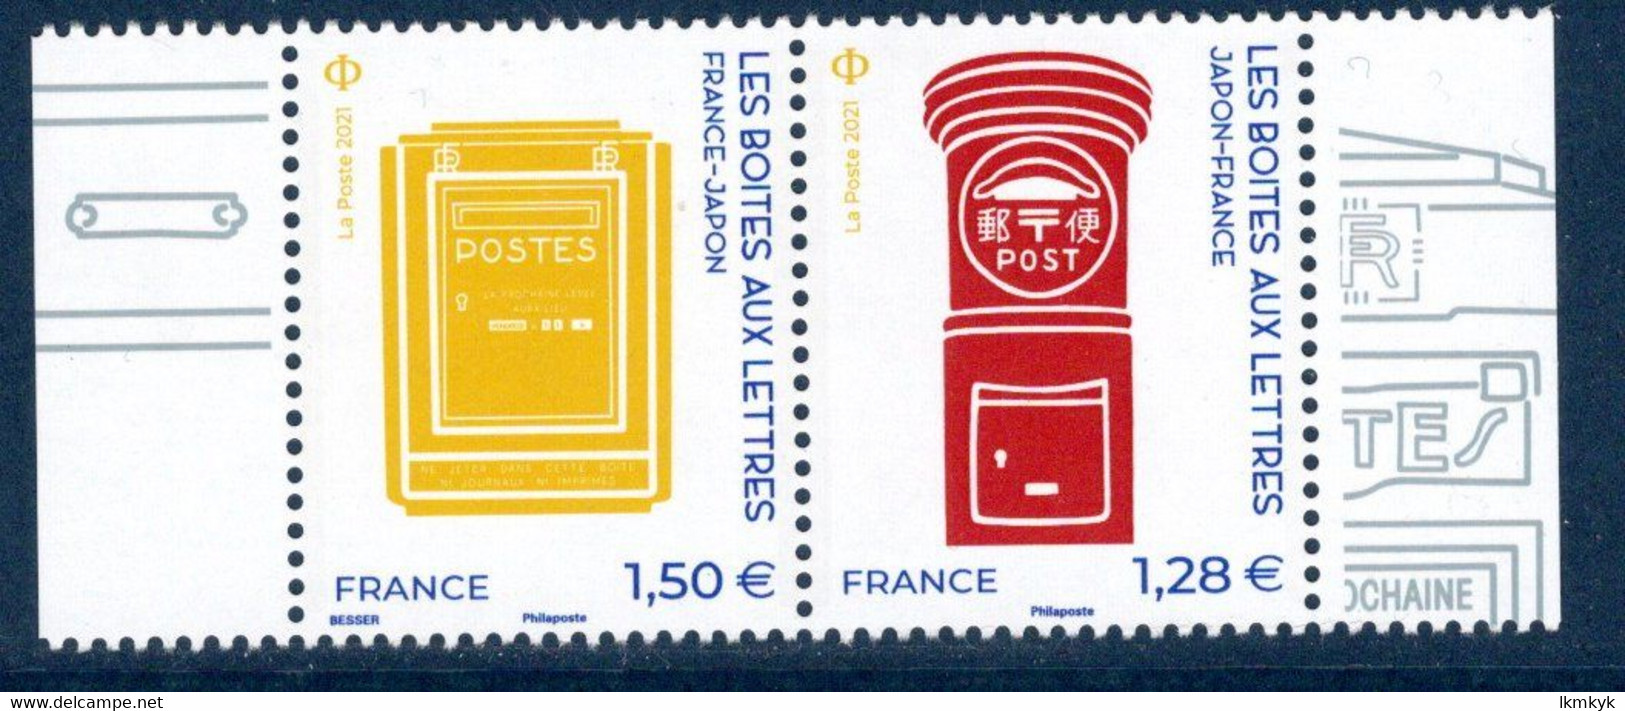 France 2021.Issu Du Bloc France-Japon Les Boites Aux Lettres .** - Souvenir Blocks & Sheetlets